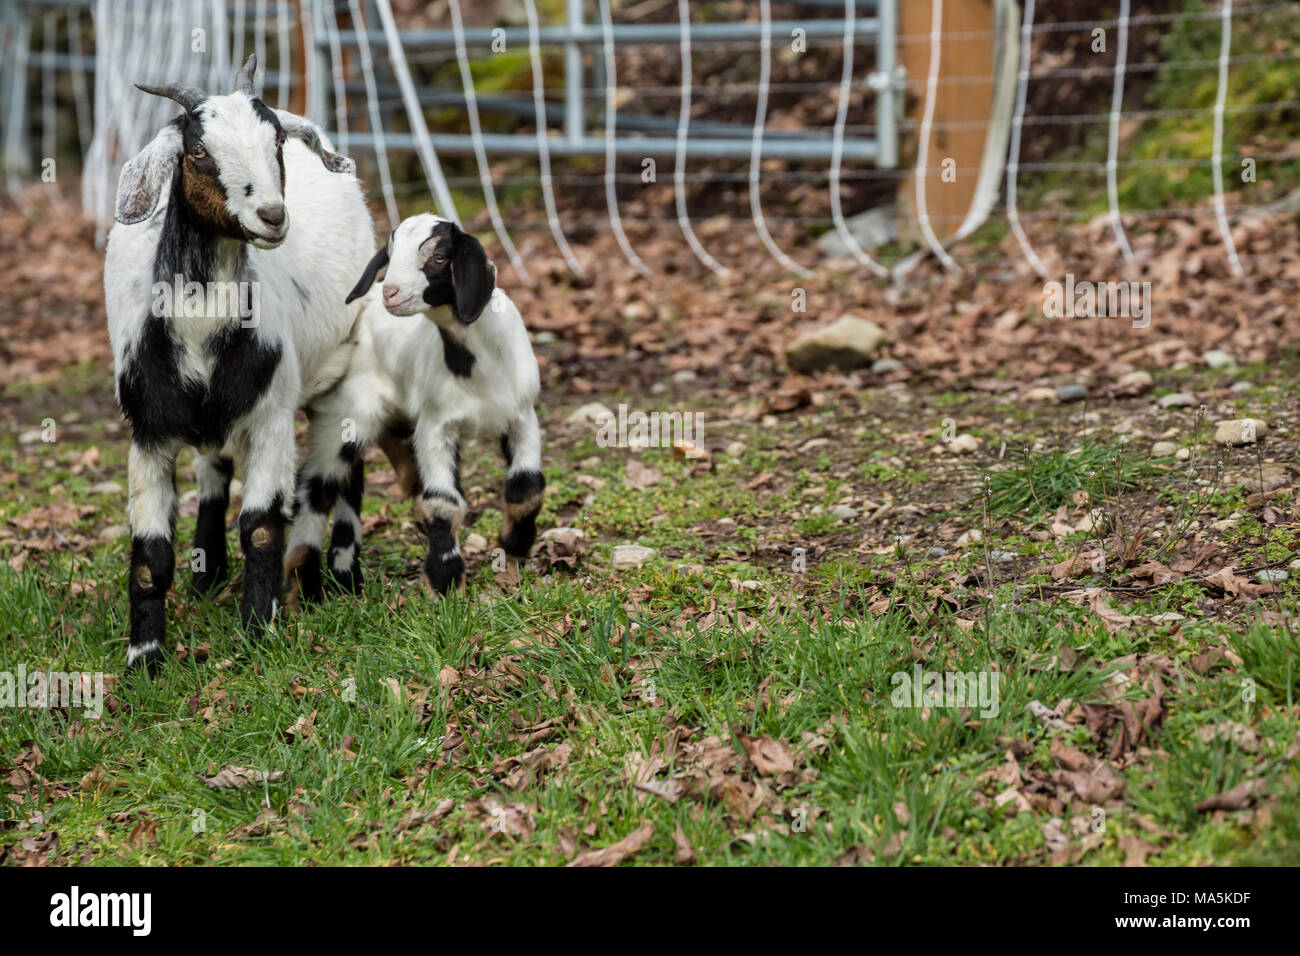 12 Tage alten Mischling Nubian und Boer goat Kind und Mutter in der Barnyard Stockfoto